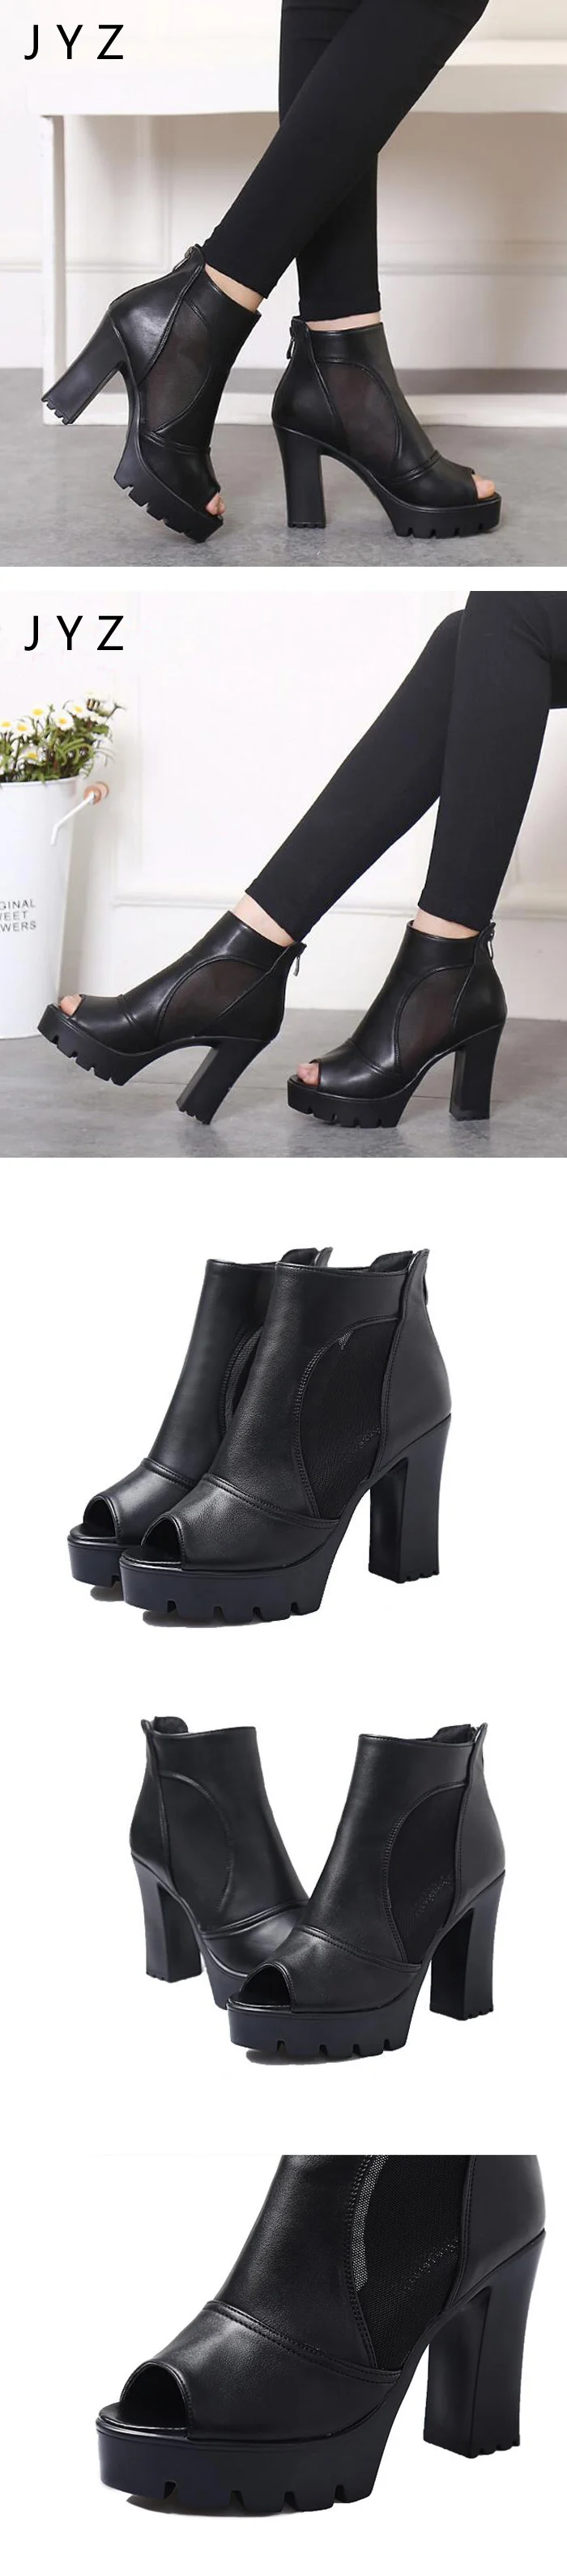 Г., новые модные женские туфли-лодочки на платформе летние туфли на высоком толстом каблуке с открытым носком Черная Женская обувь, aa0859